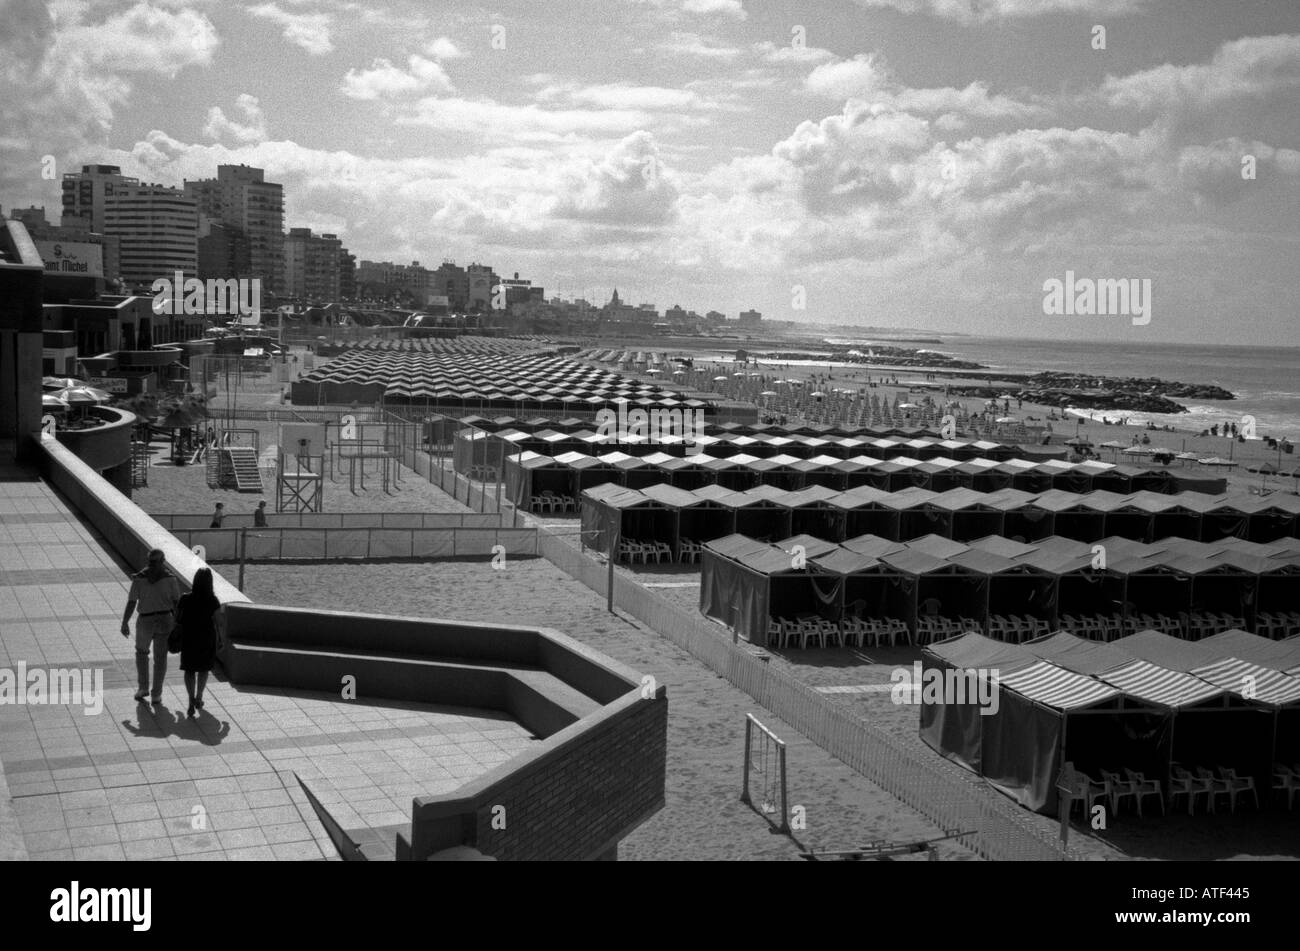 Stadtbild Strand Serie Hütte Schatten Seesand Zeile wiederholen Stuhl paar Sonnenbalkon Mar del Plata Argentinien Südamerika Latein Stockfoto